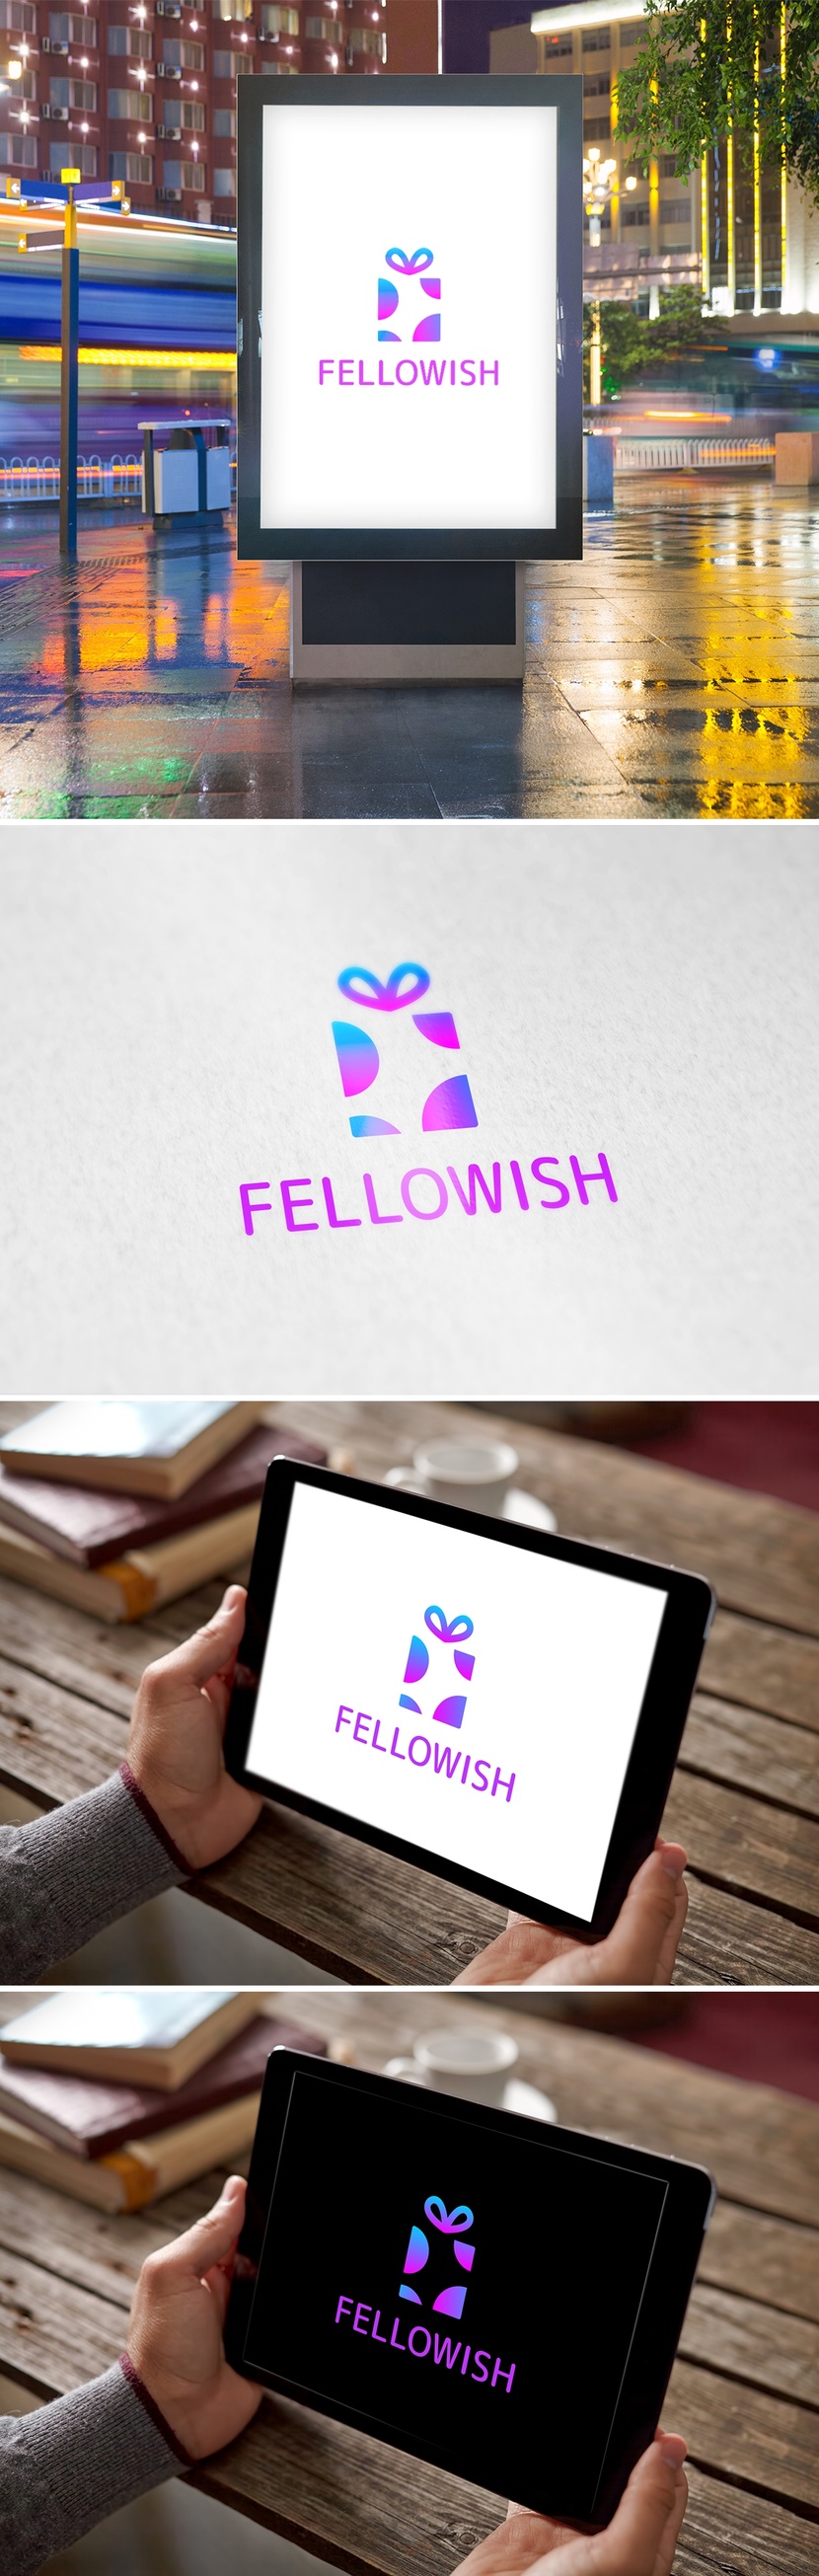 FelloWish - Лого и фирменный стиль для сайта, который помогает с выбором подарка, а также даёт возможность пользователю сделать свой вишлист.